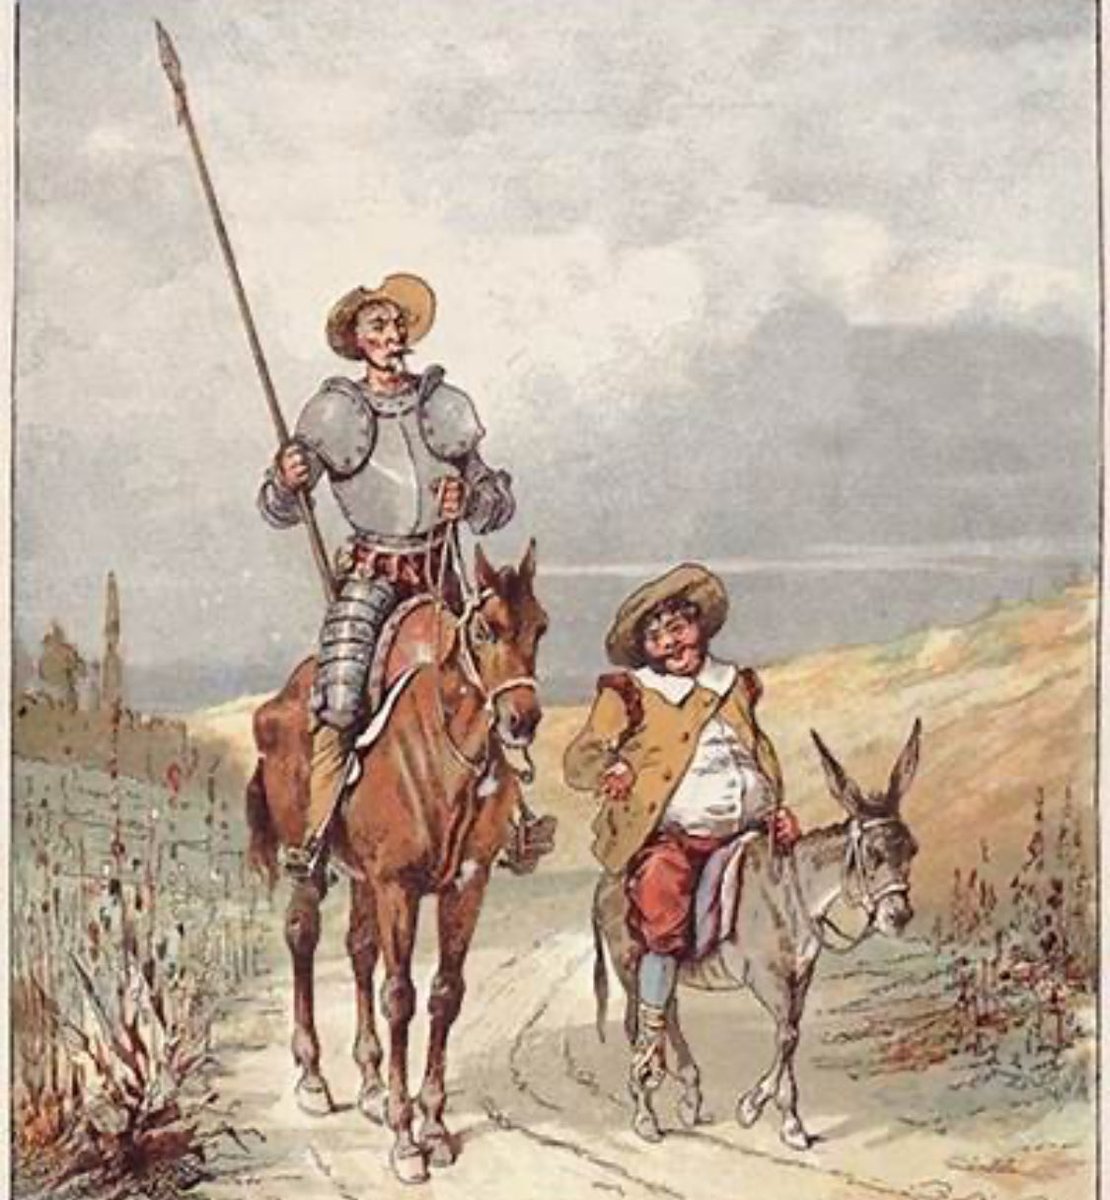 Don Quijote de la Mancha dice a Sancho, en medio de un diálogo intenso: 'no huye el que se retira'. Explica a su fiel escudero que retirarse de una situación peligrosa no debe ser considerado como un acto de cobardía, sino más bien como una muestra de amor, prudencia y sabiduría.